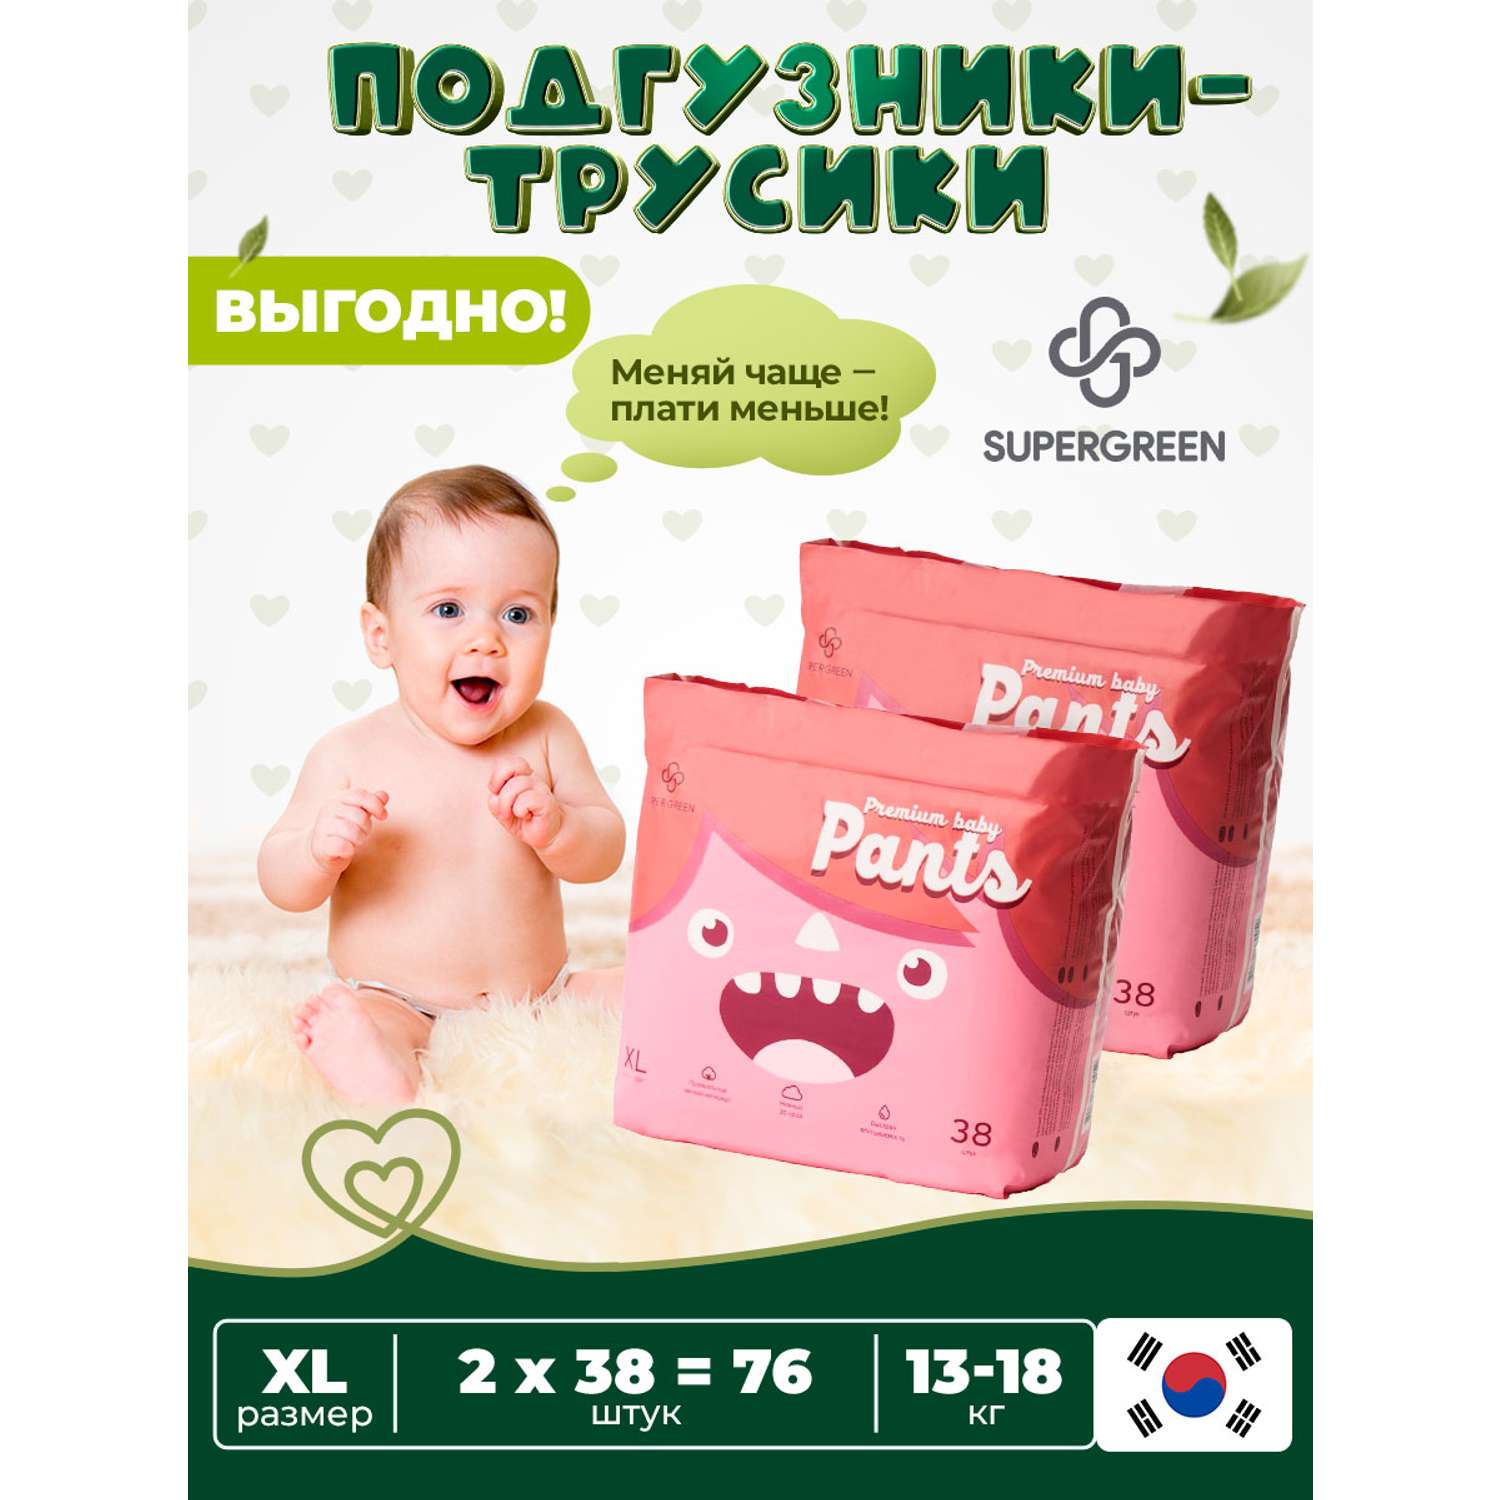 Трусики-подгузники SUPERGREEN Premium baby Pants ХL размер 2 упаковки по 38 шт 13-18 кг ультрамягкие - фото 1